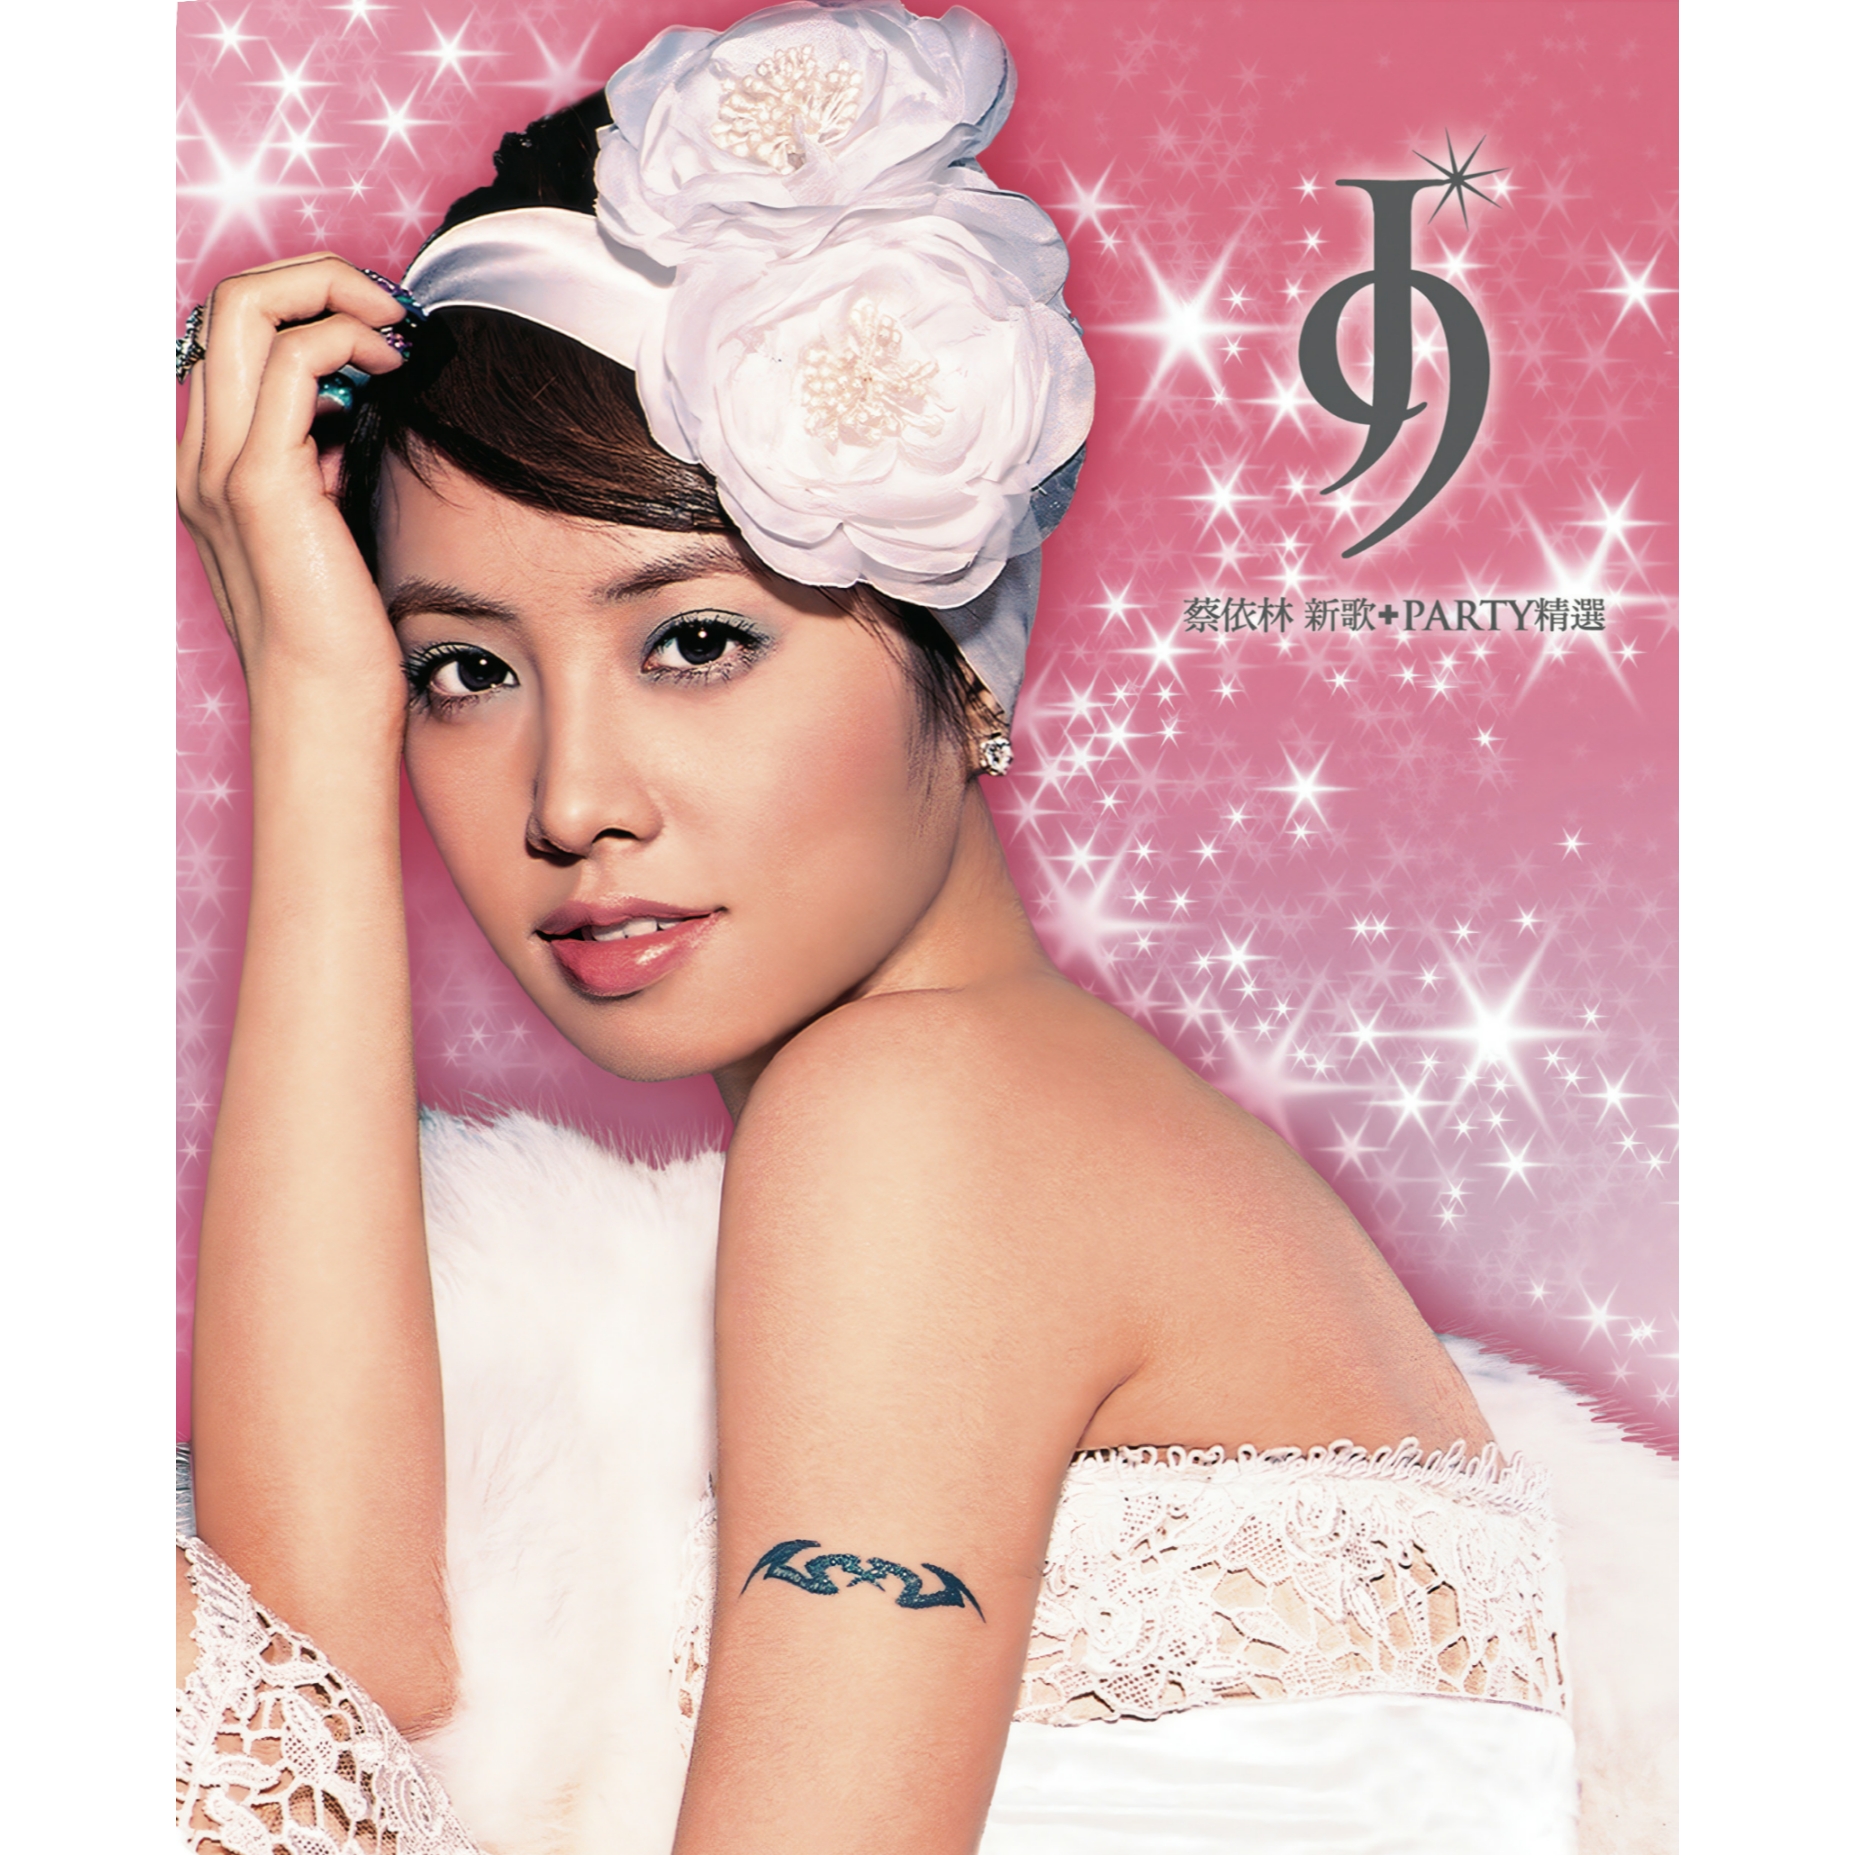 Jolin Tsai — Signature Gesture / 招牌動作 cover artwork